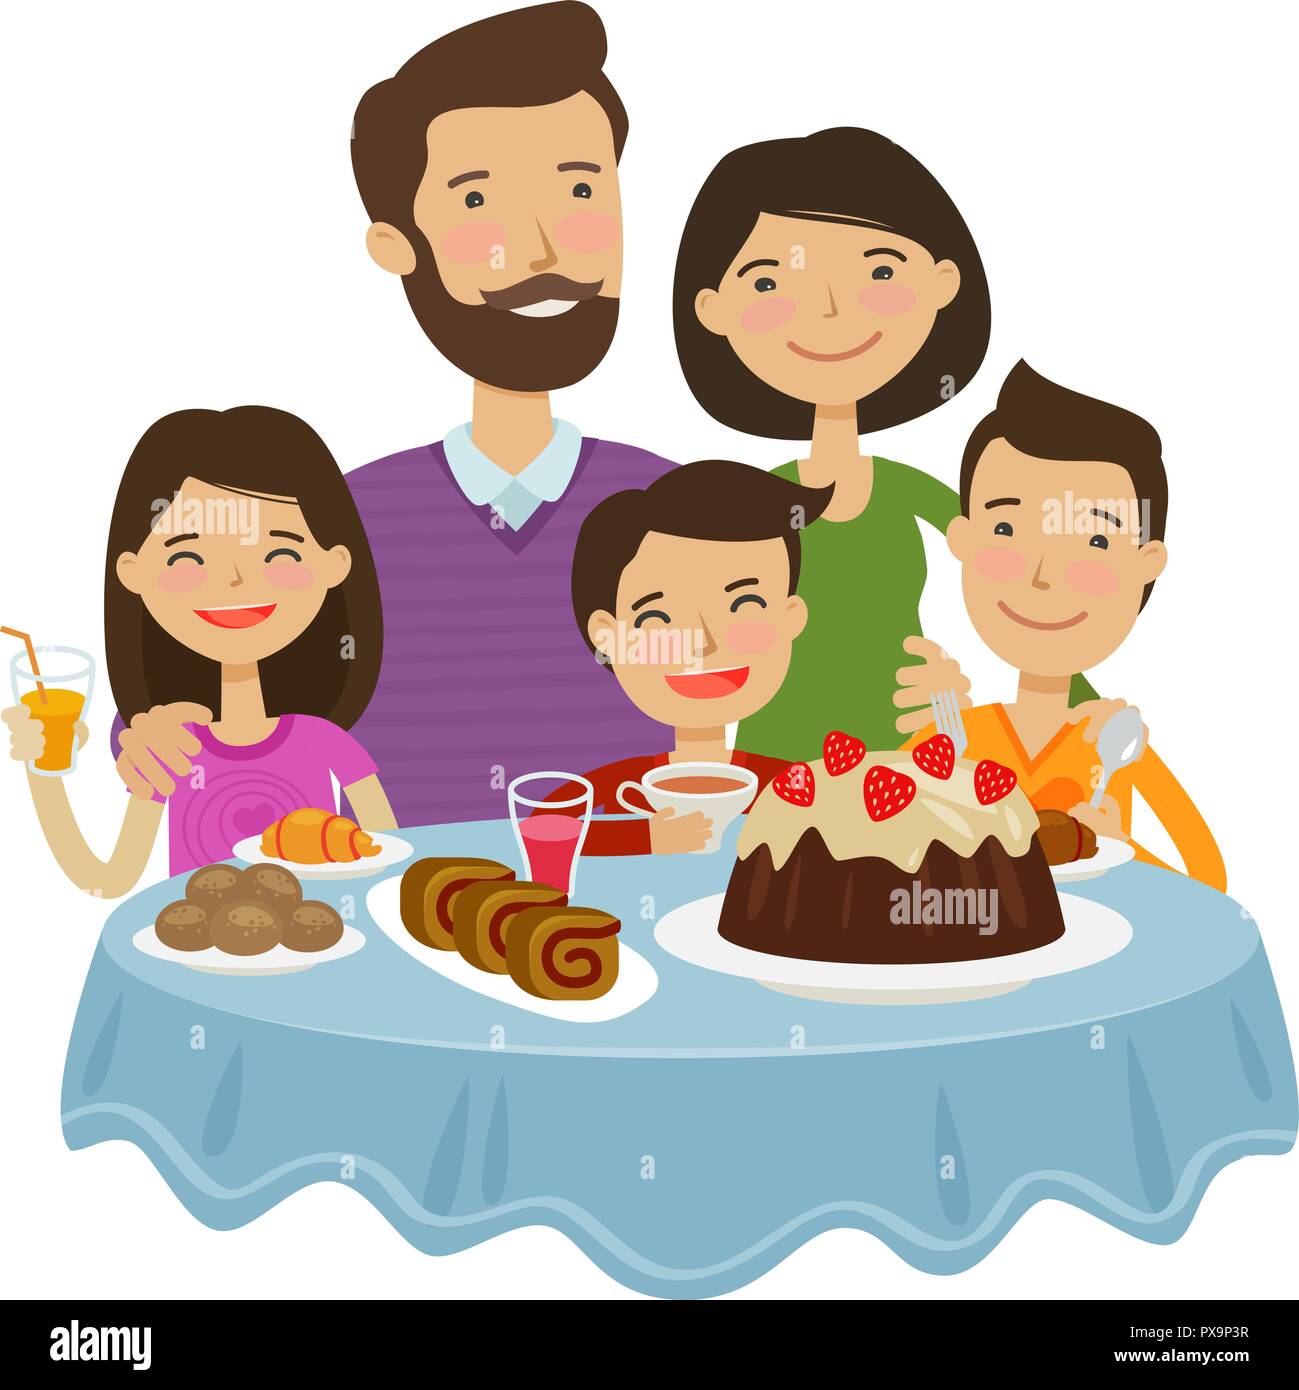 Glückliche Familie zu feiern. Urlaub Konzept. Cartoon Vector Illustration Stock Vektor